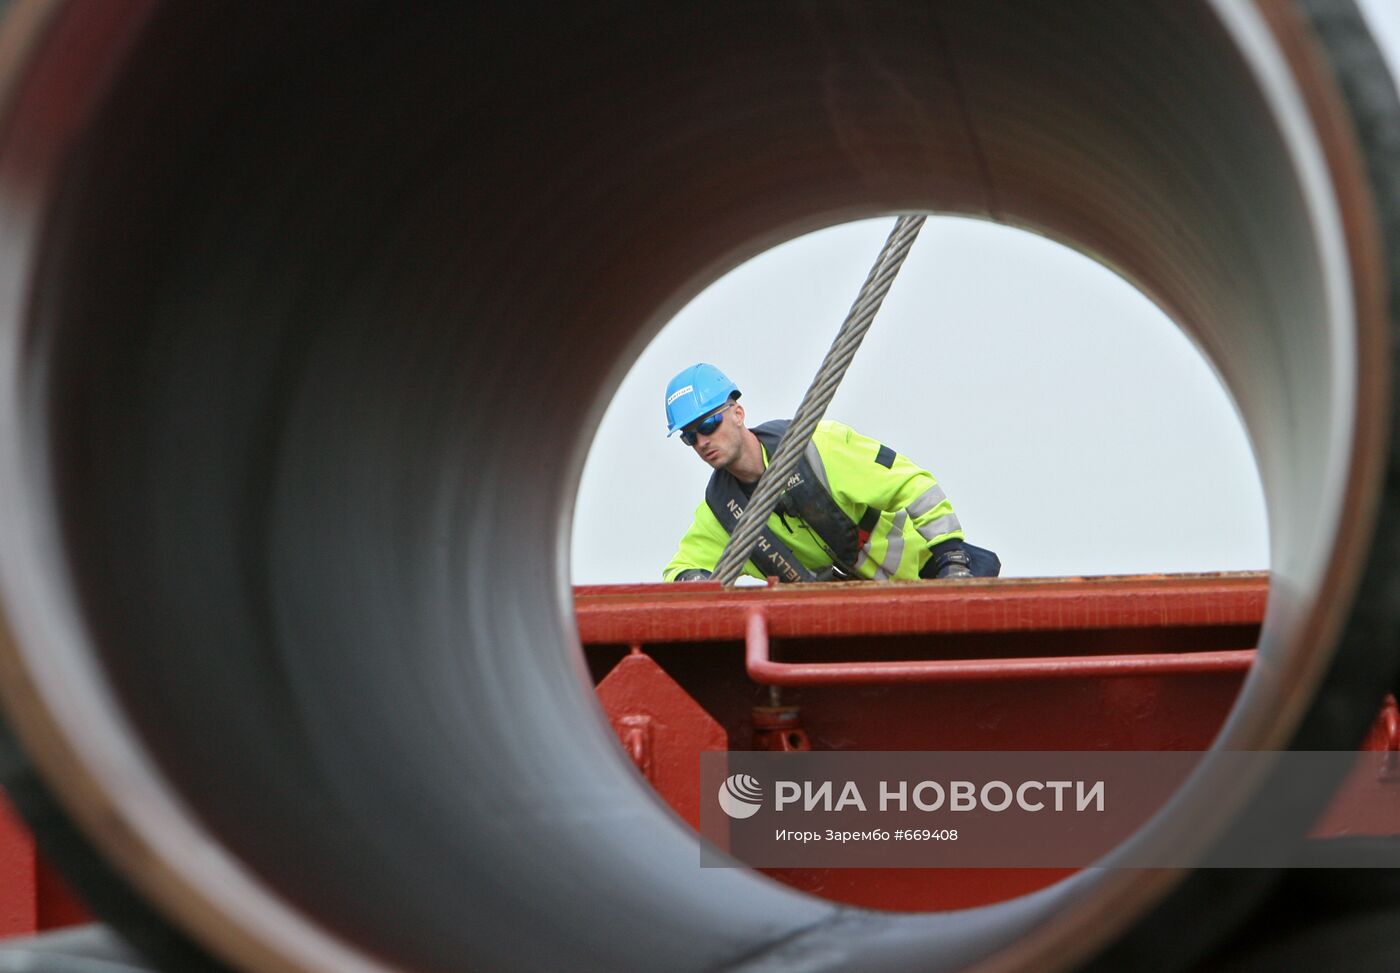 Cтроительство газопровода "Северный поток" (Nord Stream)